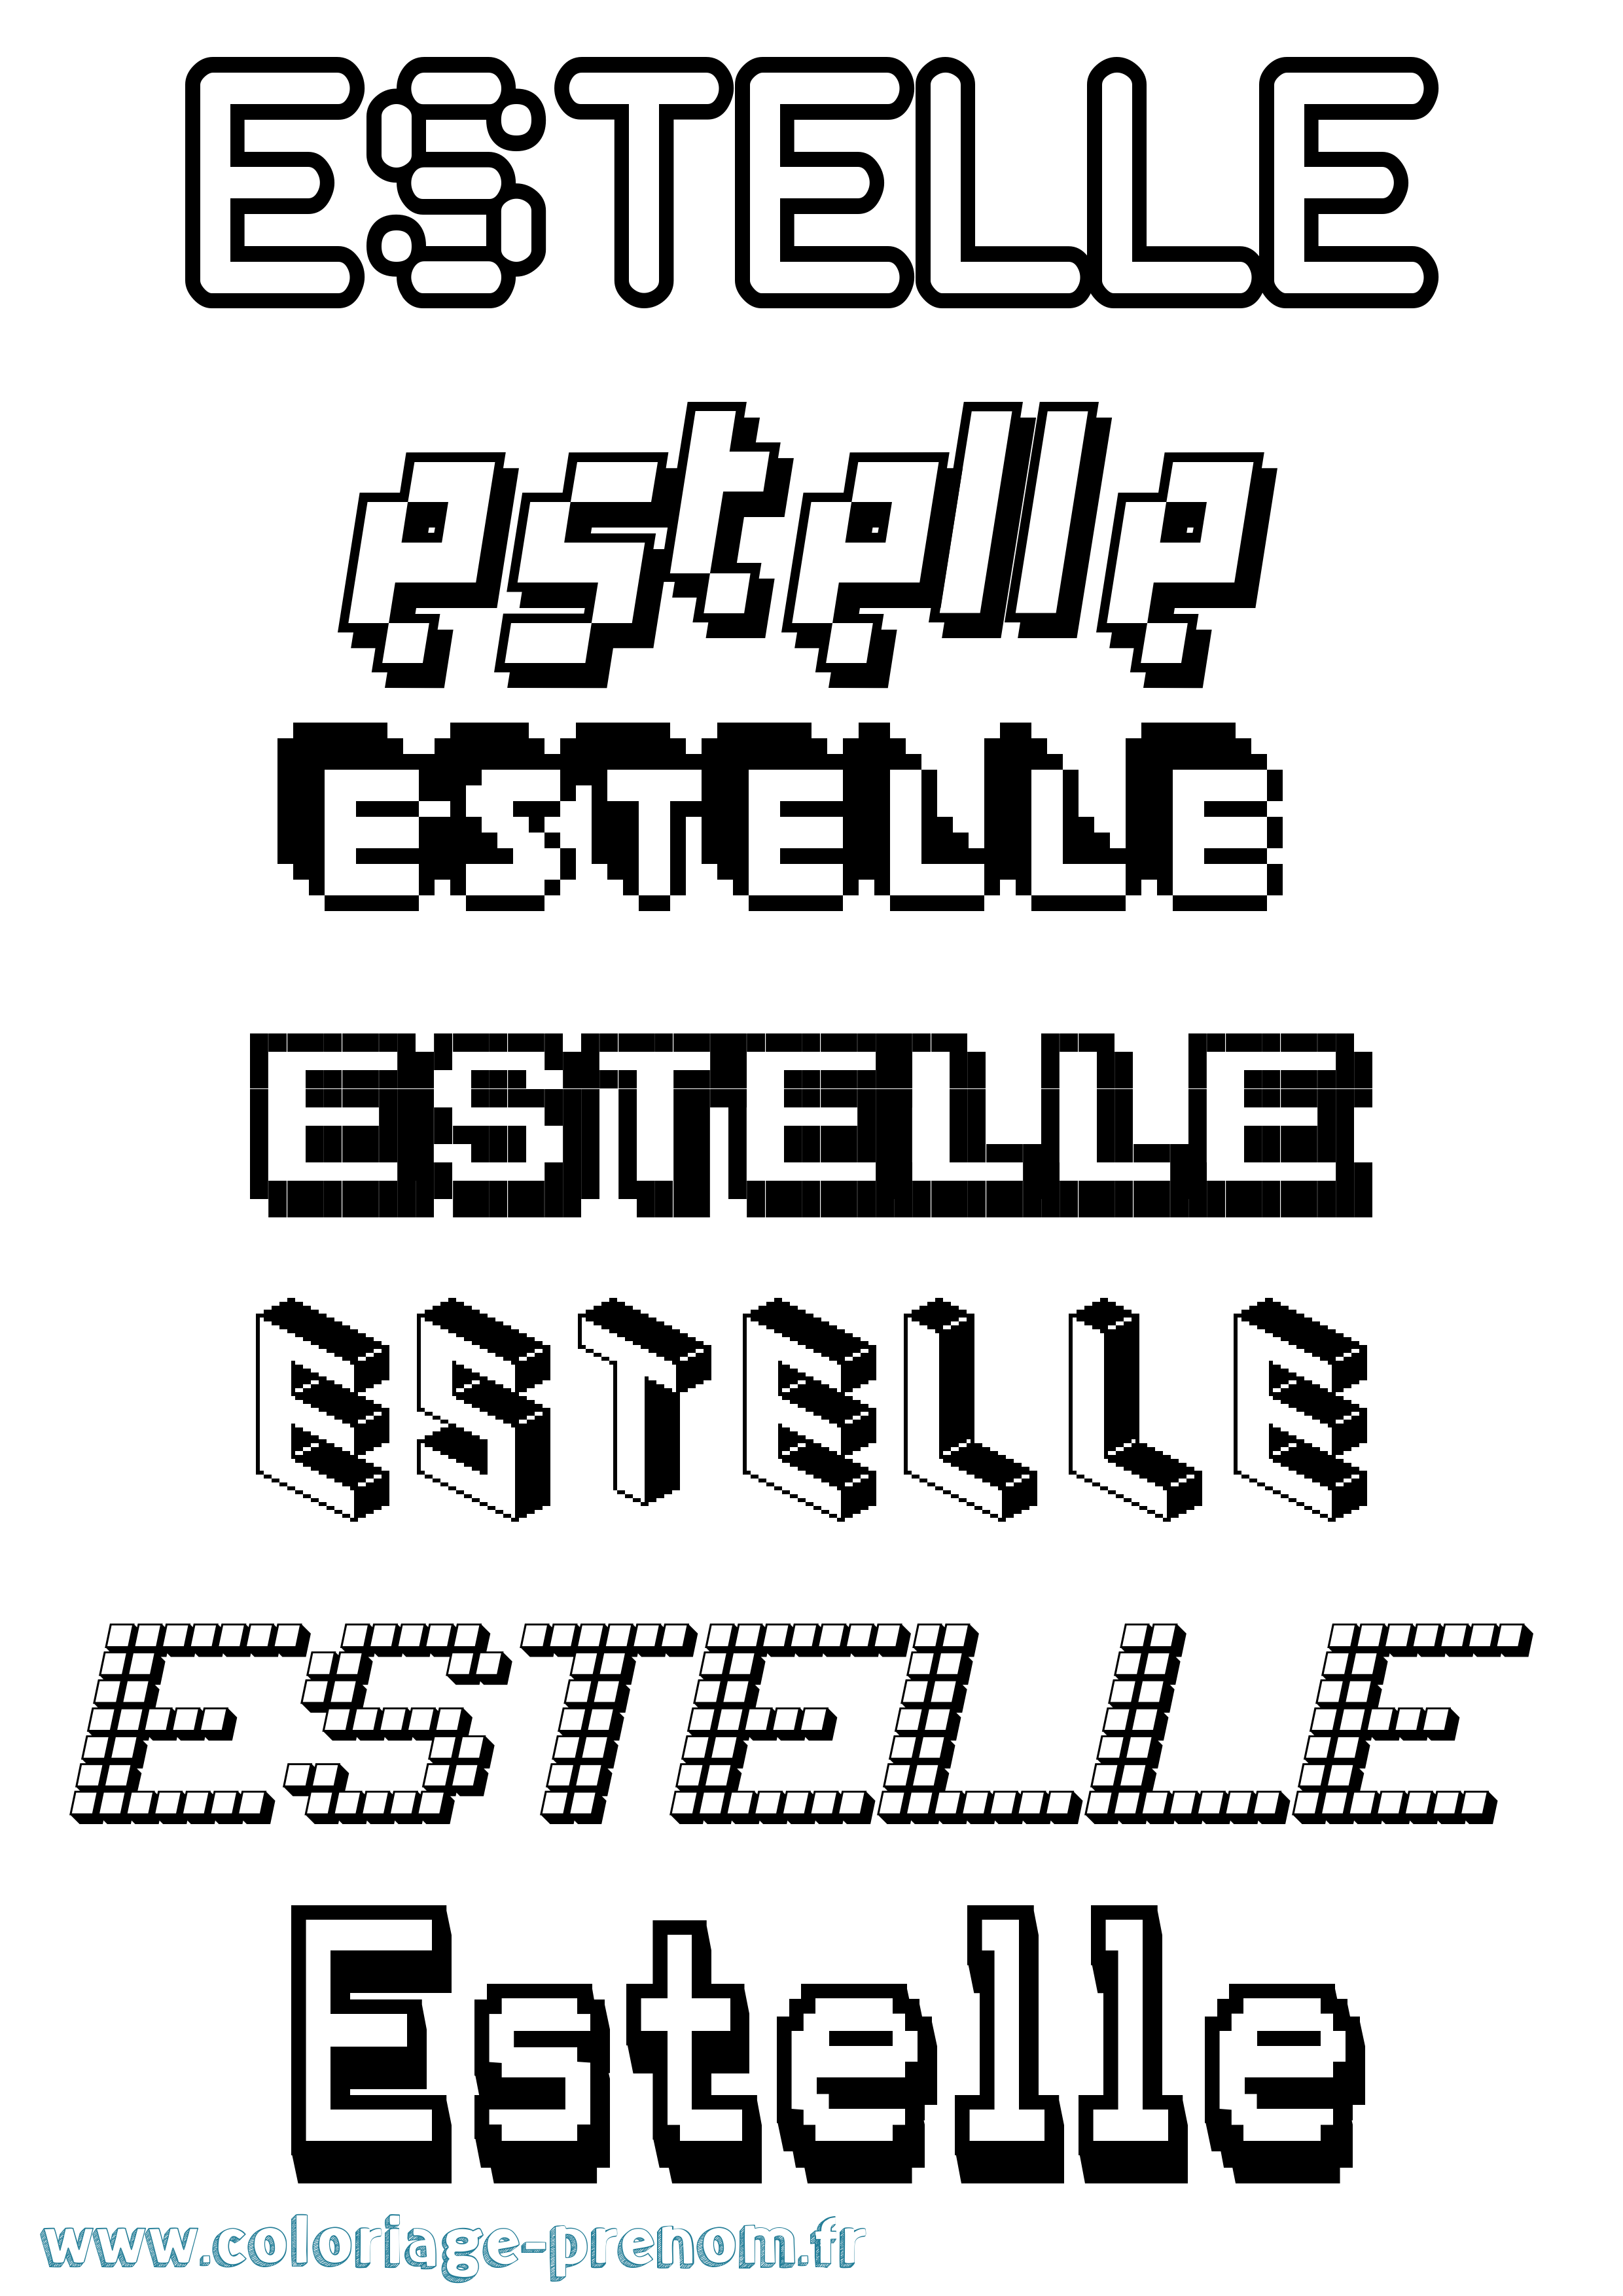 Coloriage prénom Estelle Pixel